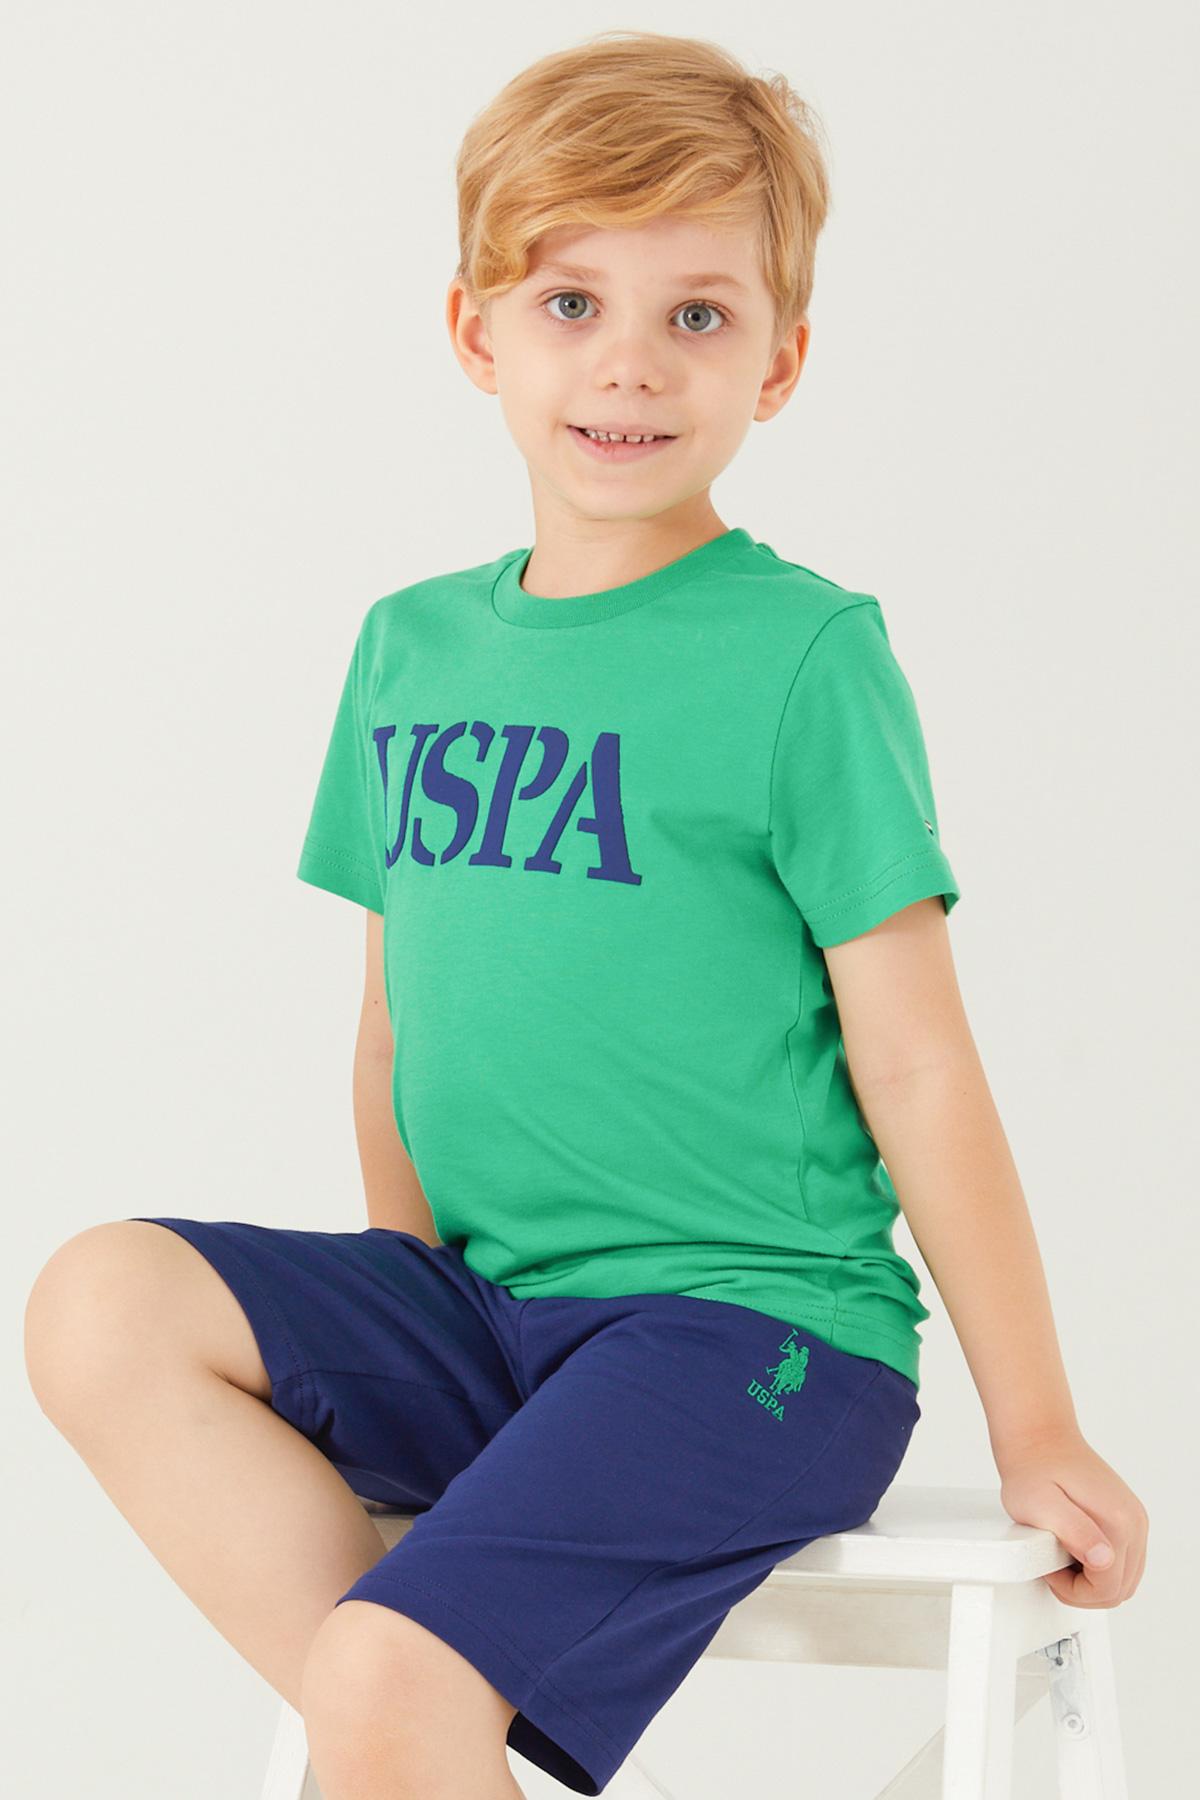 U.S. POLO ASSN. Komplet šorc i majica za dečake US1317-G teget-zeleni